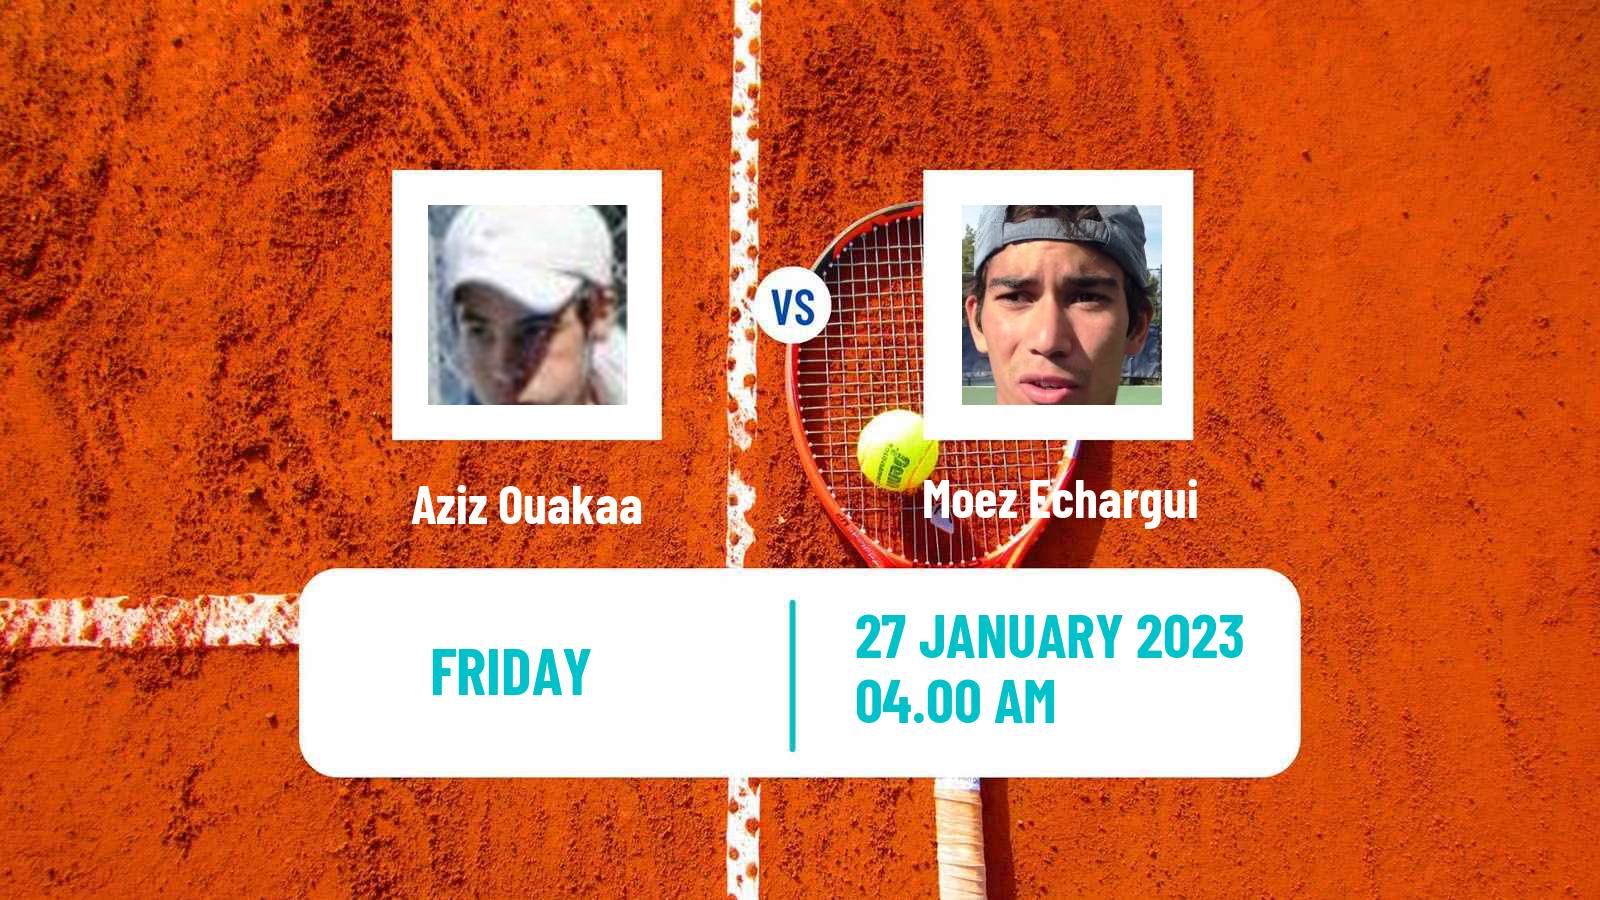 Tennis ITF Tournaments Aziz Ouakaa - Moez Echargui